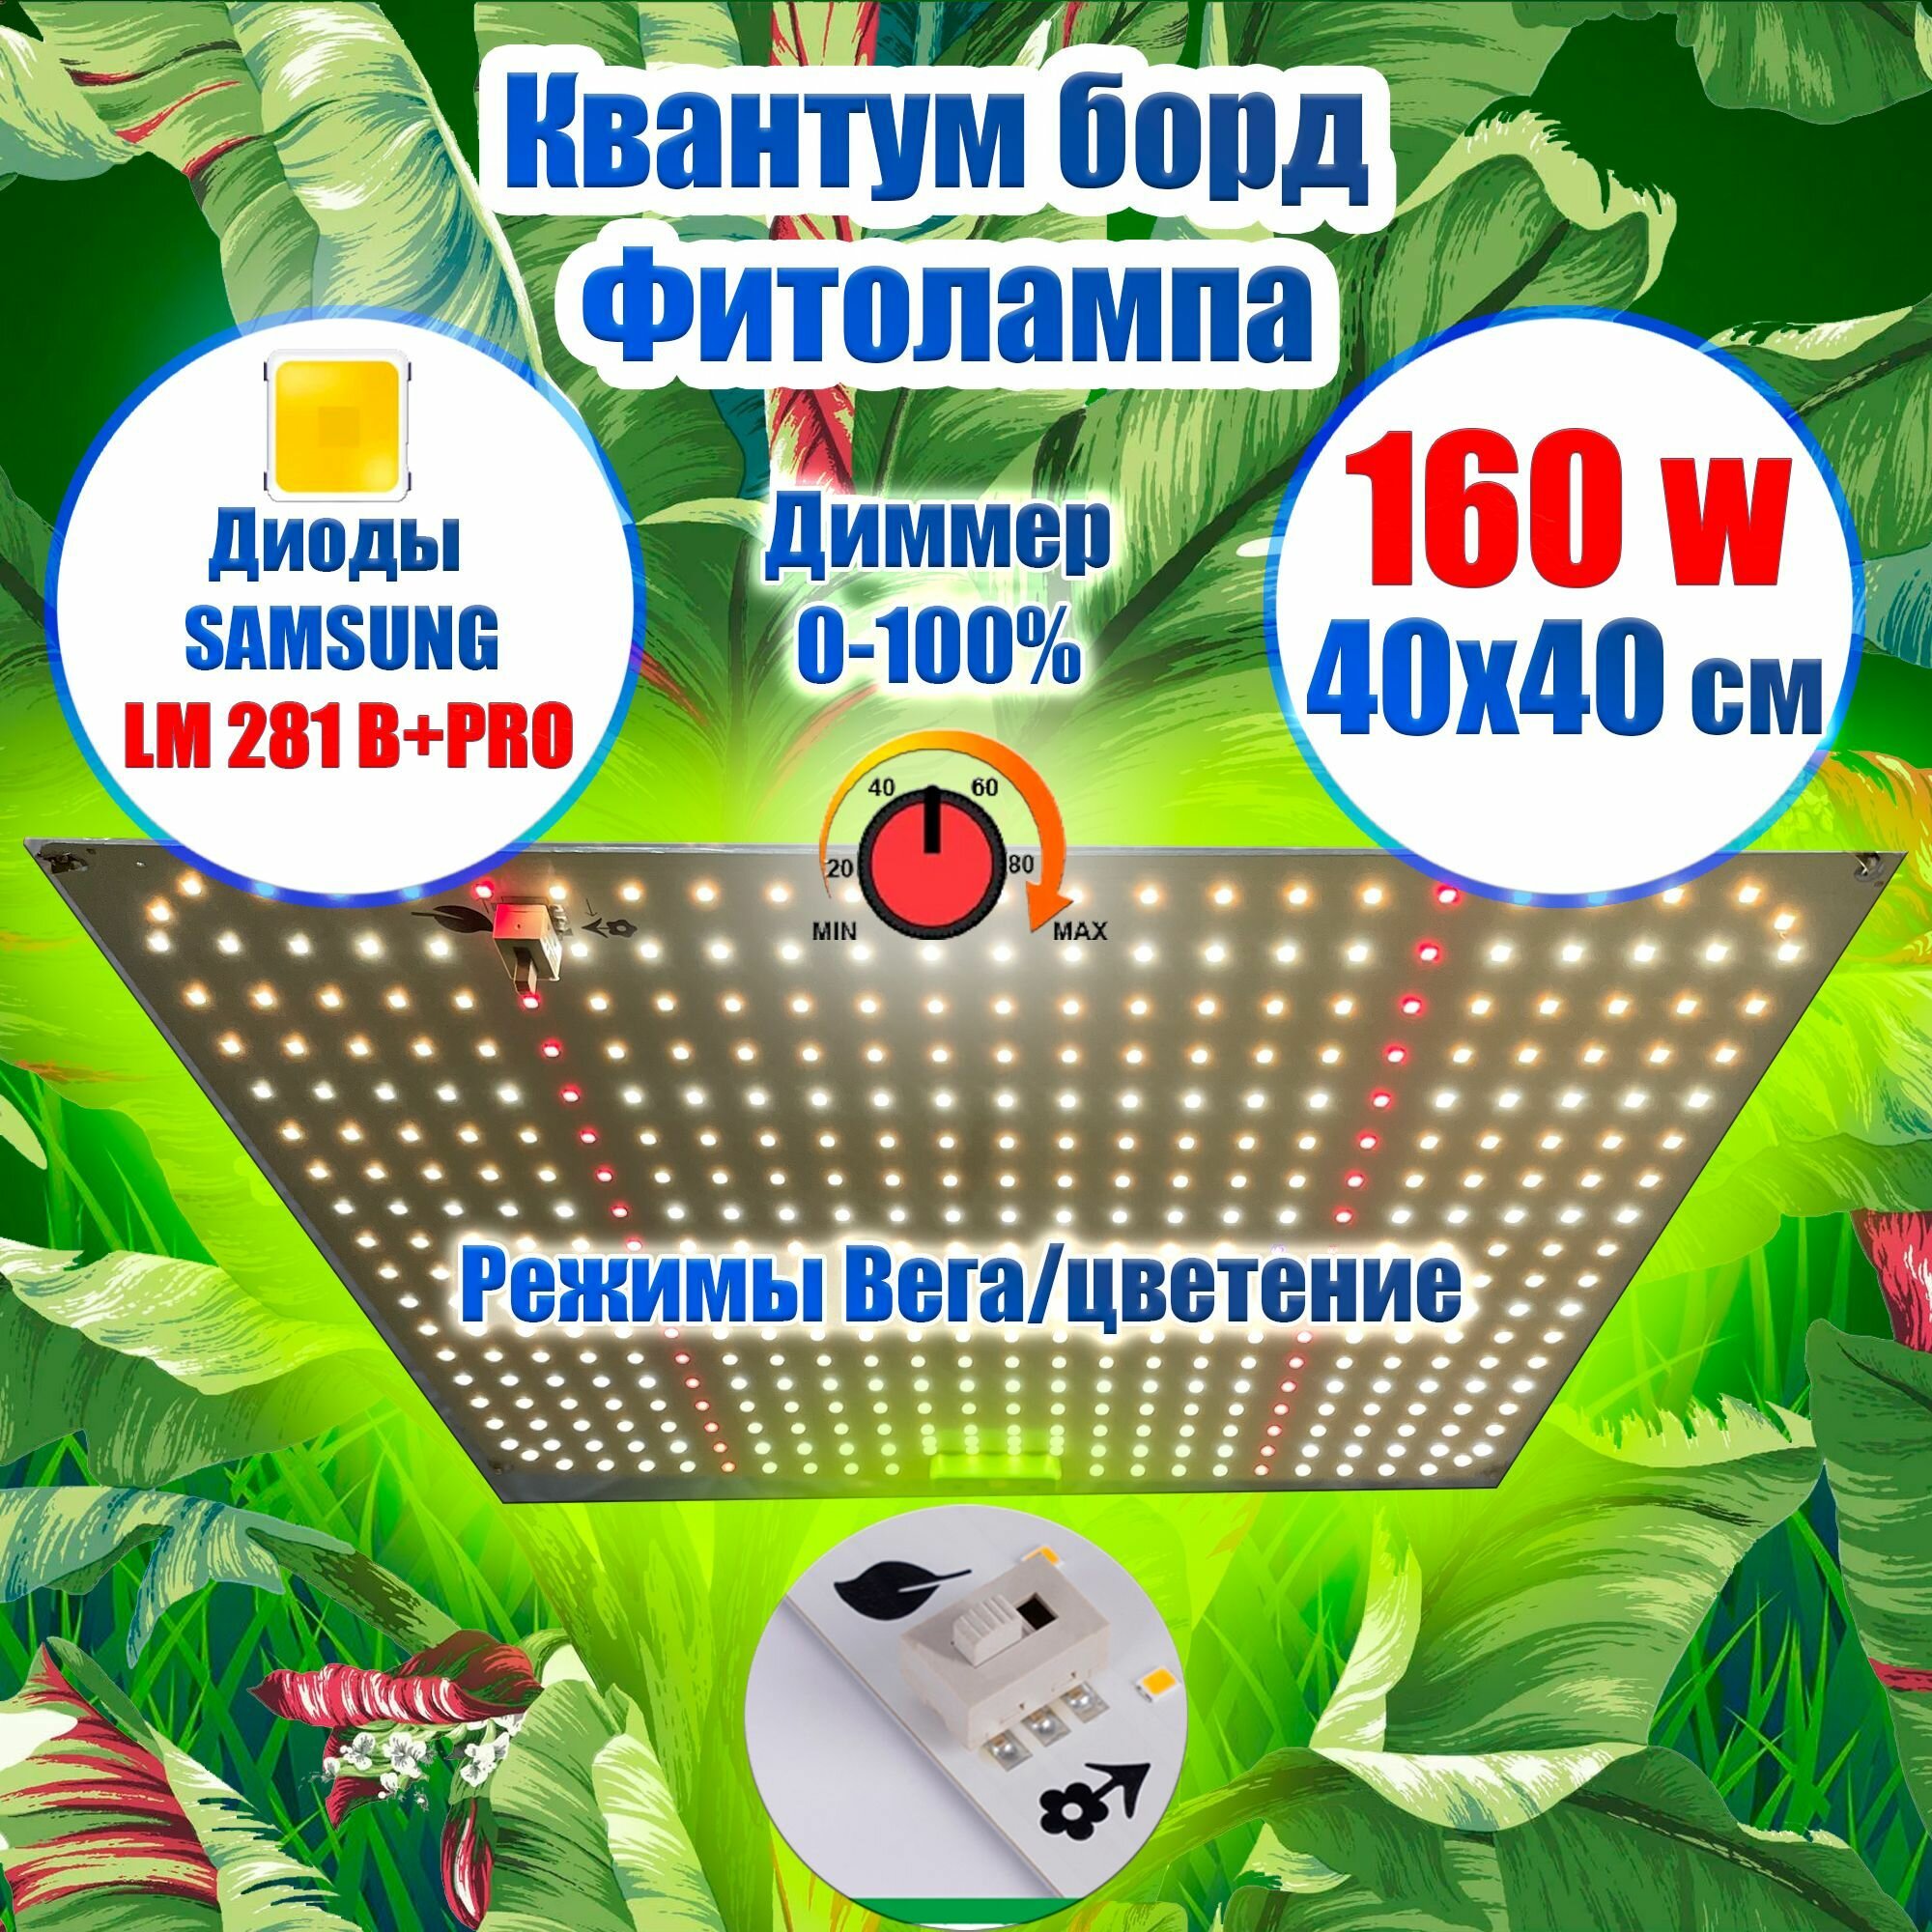 Лампа для растений 40х40 см 150 ватт/ Квантум борд Диоды LM281b+ IR и UV с Диммером/ Фитолампа фитосветильник Режимы вегетация и цветение